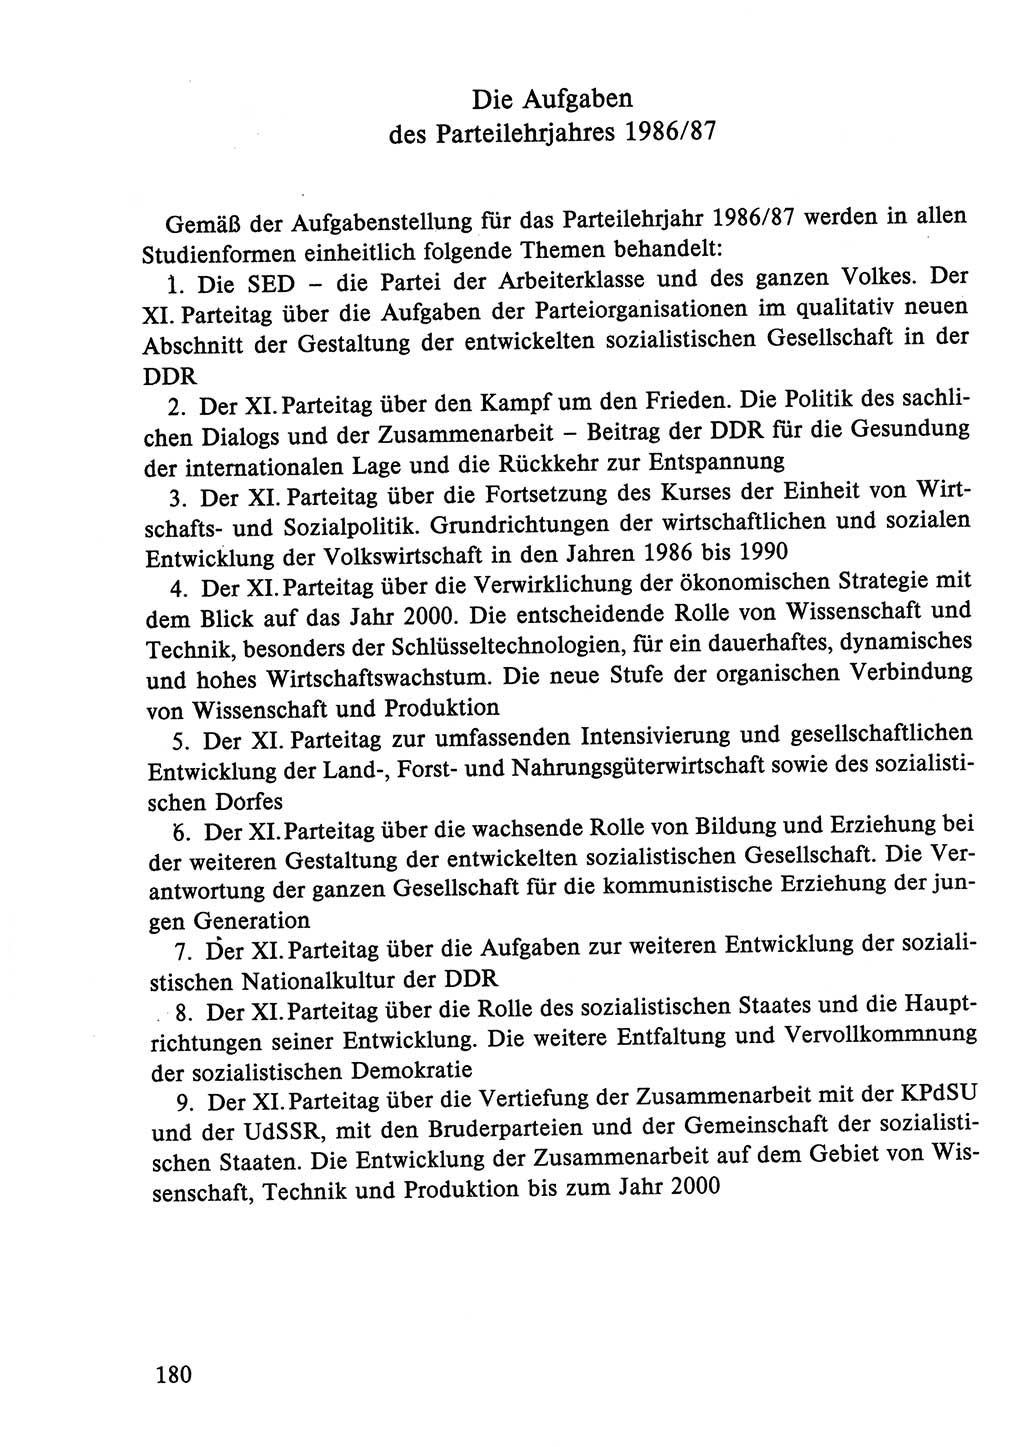 Dokumente der Sozialistischen Einheitspartei Deutschlands (SED) [Deutsche Demokratische Republik (DDR)] 1986-1987, Seite 180 (Dok. SED DDR 1986-1987, S. 180)